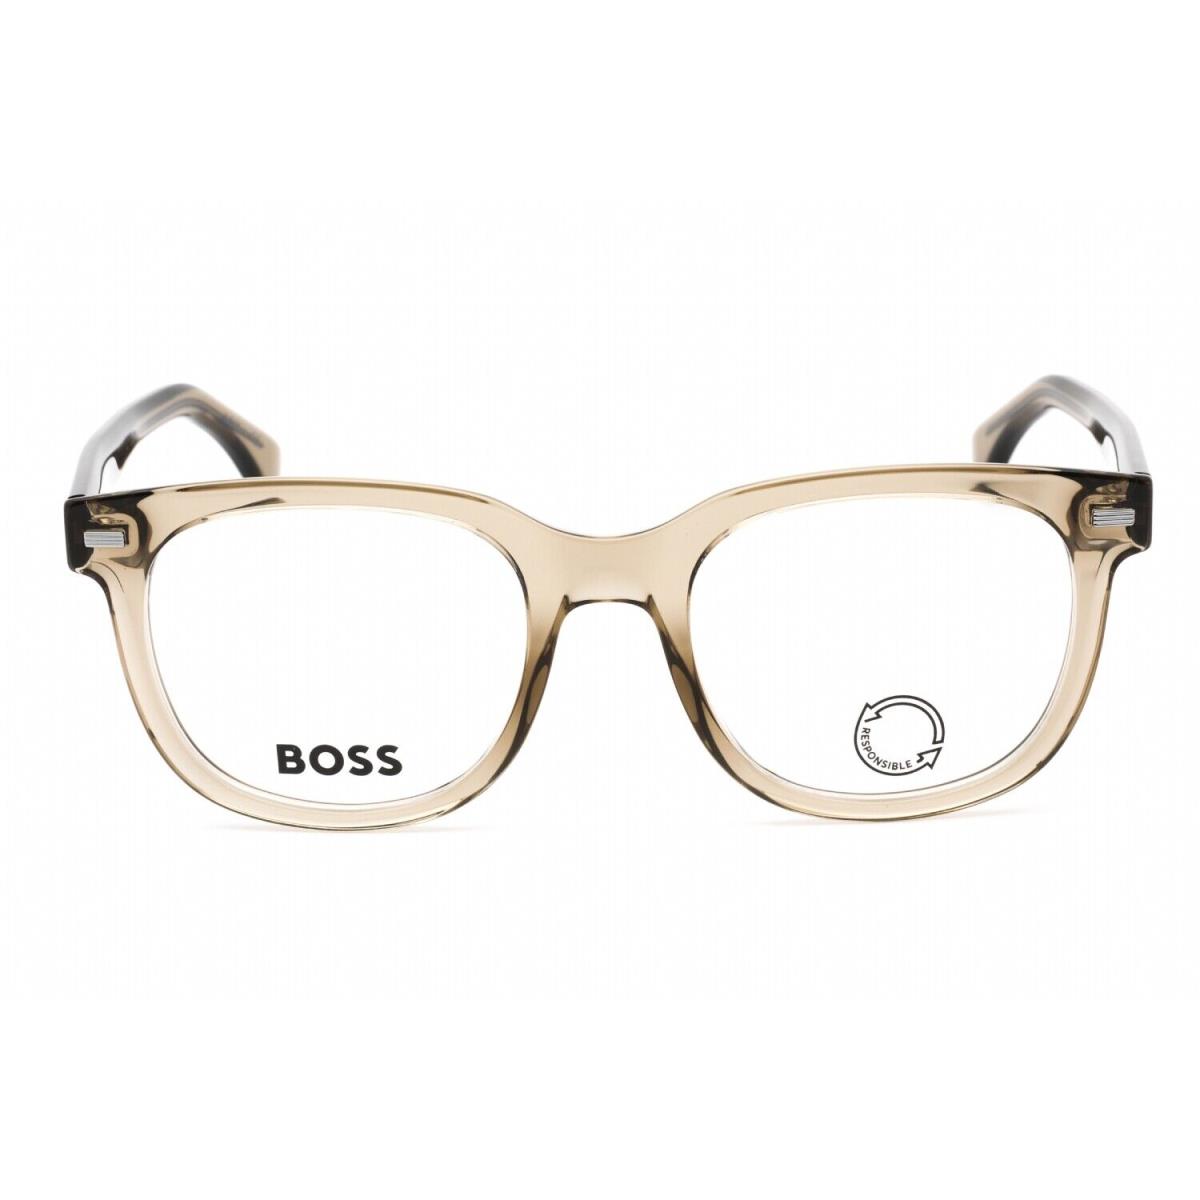 Hugo Boss Boss 1444/N 009Q Eyeglasses Brown Frame 52mm